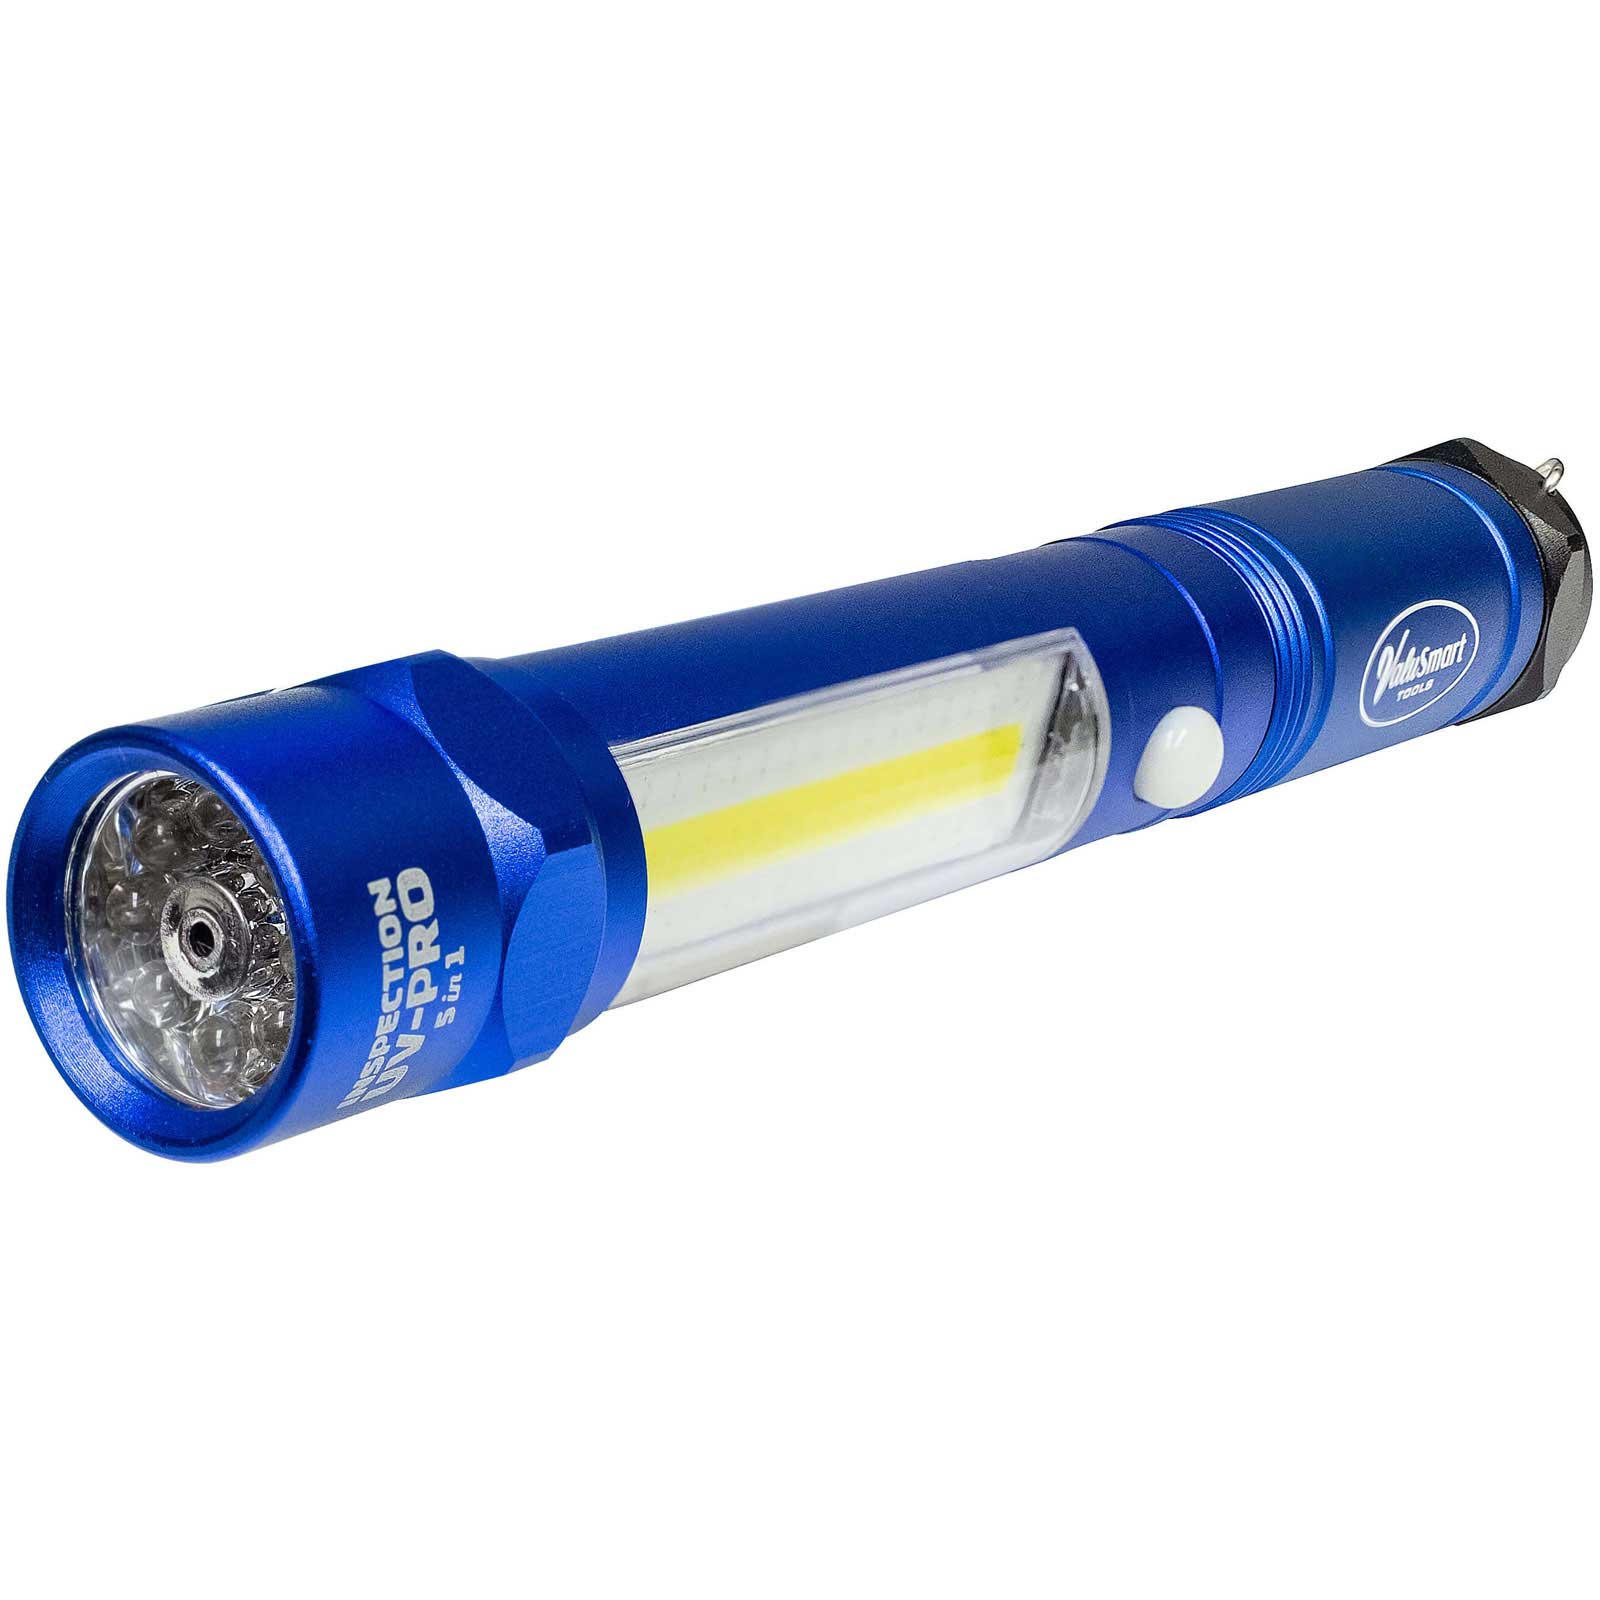 ValuSmart 5 in 1 UV Ultimate Flashlight